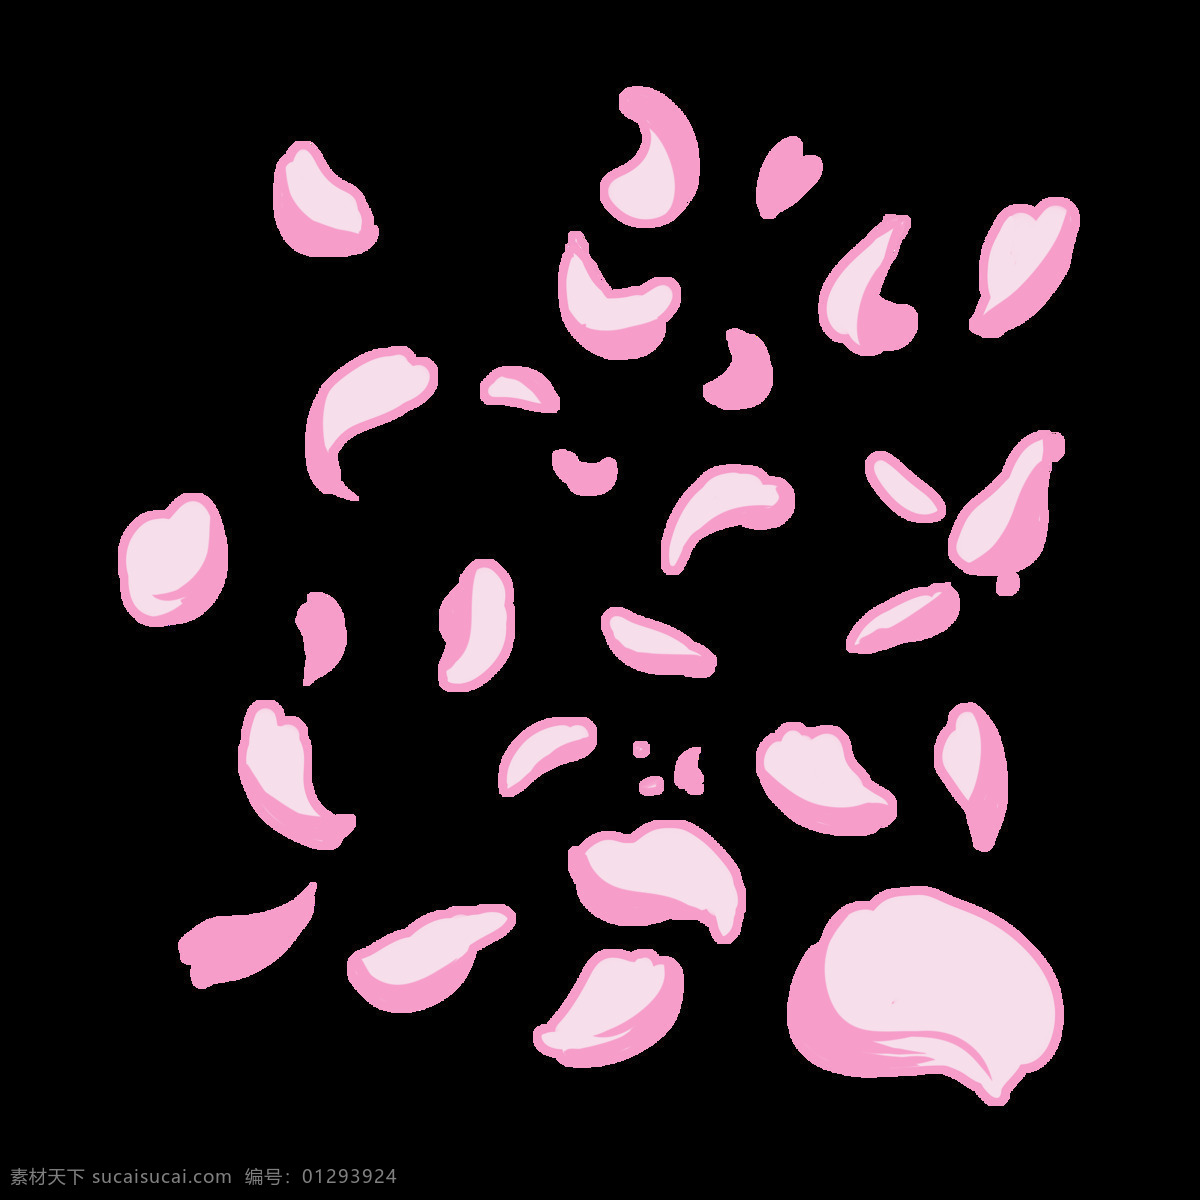 粉色 花瓣 手绘 插画 粉色的花瓣 漂亮的花瓣 手绘花瓣 卡通花瓣 漂浮的花瓣 花瓣装饰 鲜花花瓣